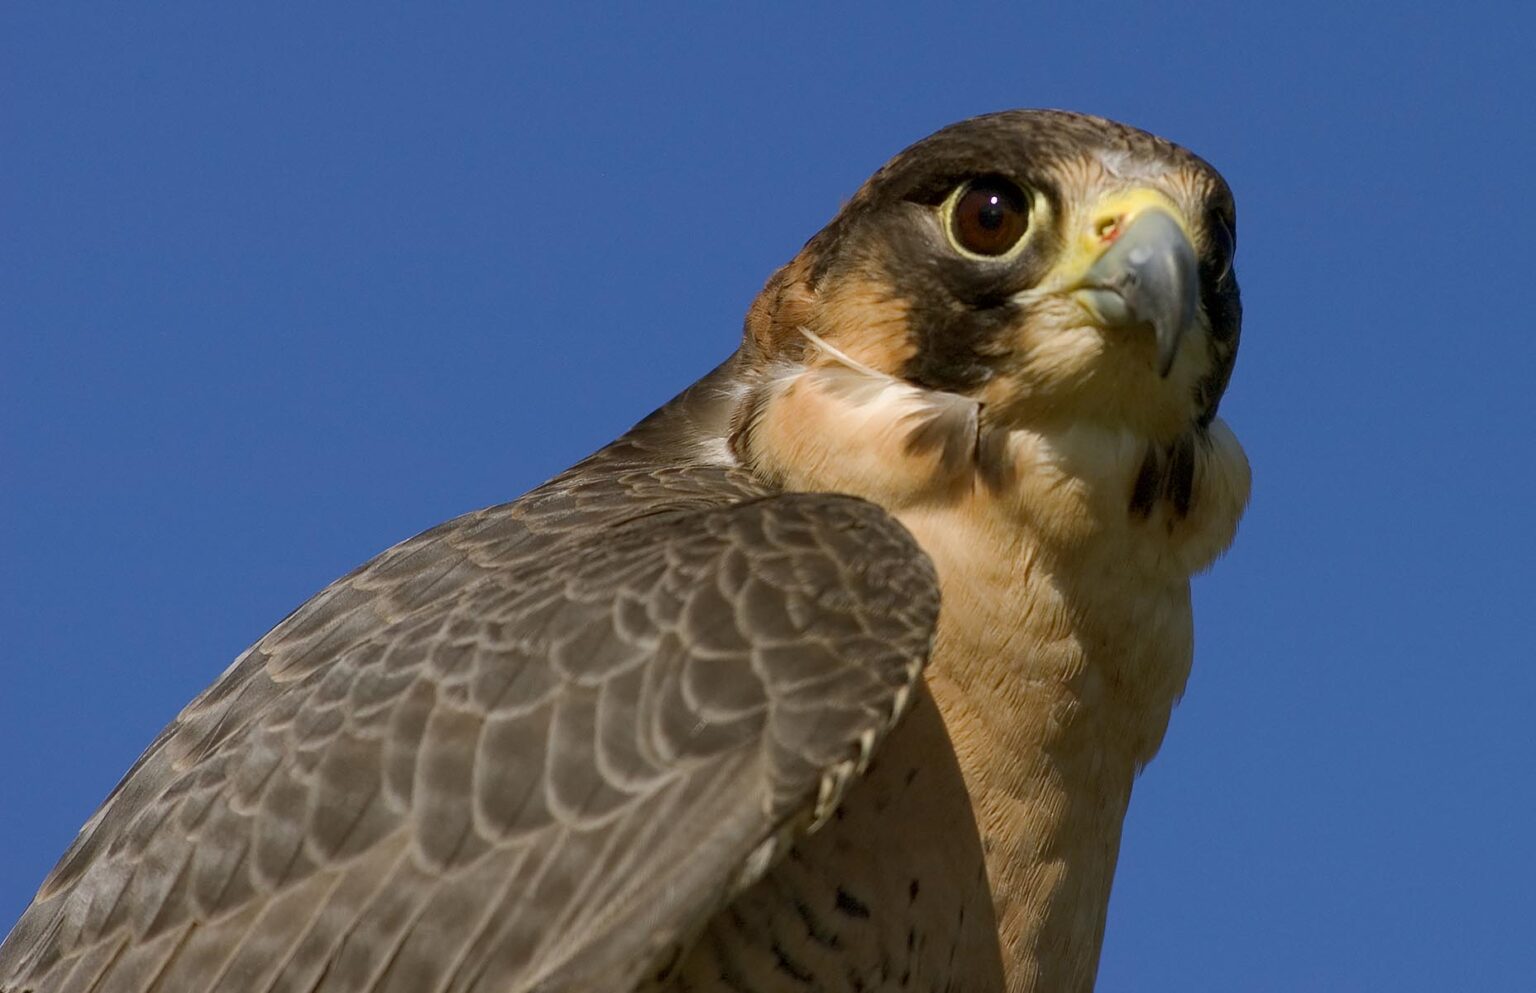 The head of a Barbary Falcon